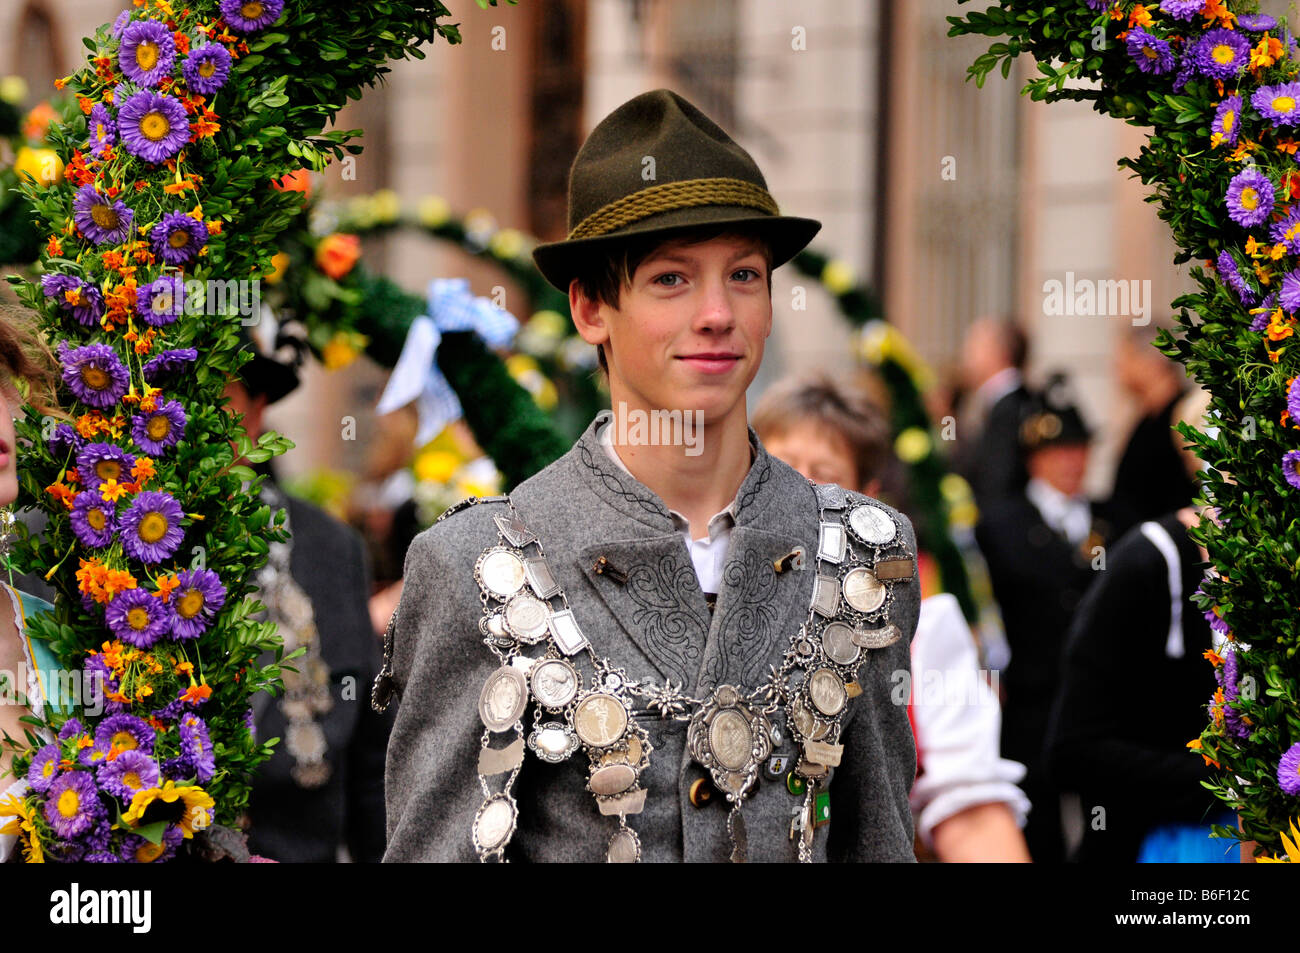 Jeune homme dans les atours de l'Oktoberfest costume traditionnel cortège, Munich, Bavaria, Germany Banque D'Images